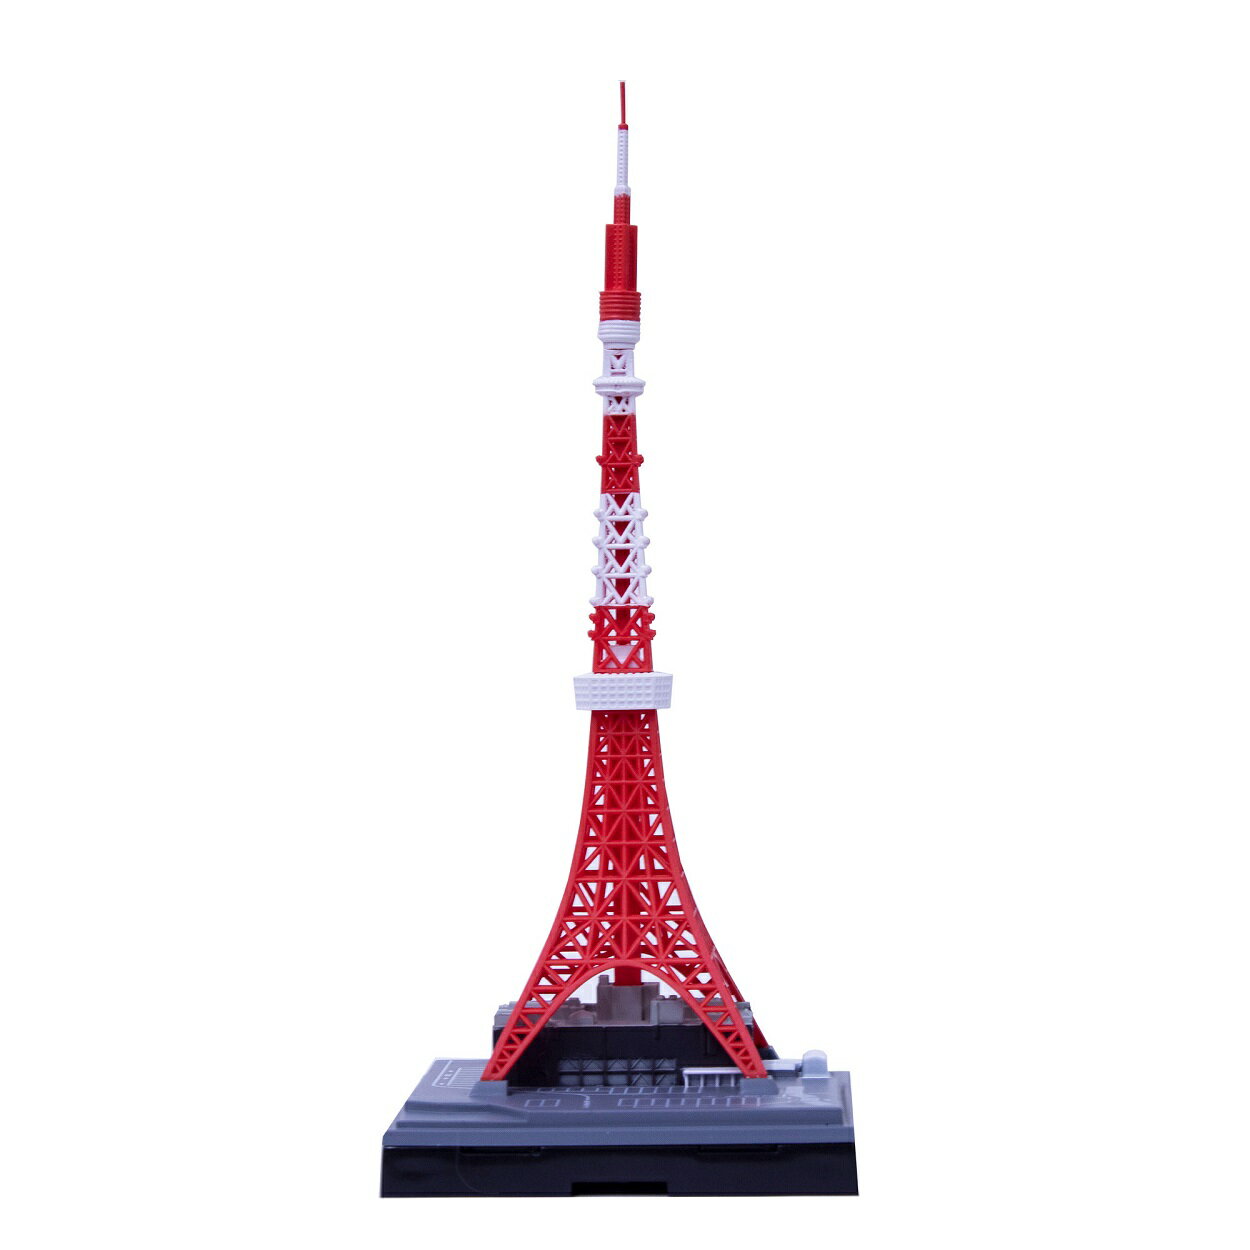 日本卓上開発のジオクレイパーです。 ・東京タワーを1/2500スケールにて単体販売いたします。 ・またパッケージも新たにしました。透明の筒型の天面のマークを日の丸モチーフに仕様を変えました。 ・「東京タワー」を手のひらサイズで超精巧の完成度で立体化し拡張ユニットの組み合わせで「東京の都市」を自由に再現する「世界で唯一」の商品です。 【仕様】高さ；133mm ・Scale=1/2500東京タワー本体×1 台座　×1 連結パーツ　× 1 ■ パッケージ；直径100mm・高さ170mmの透明の円筒です。 ※本製品の対象年齢は15歳以上です。